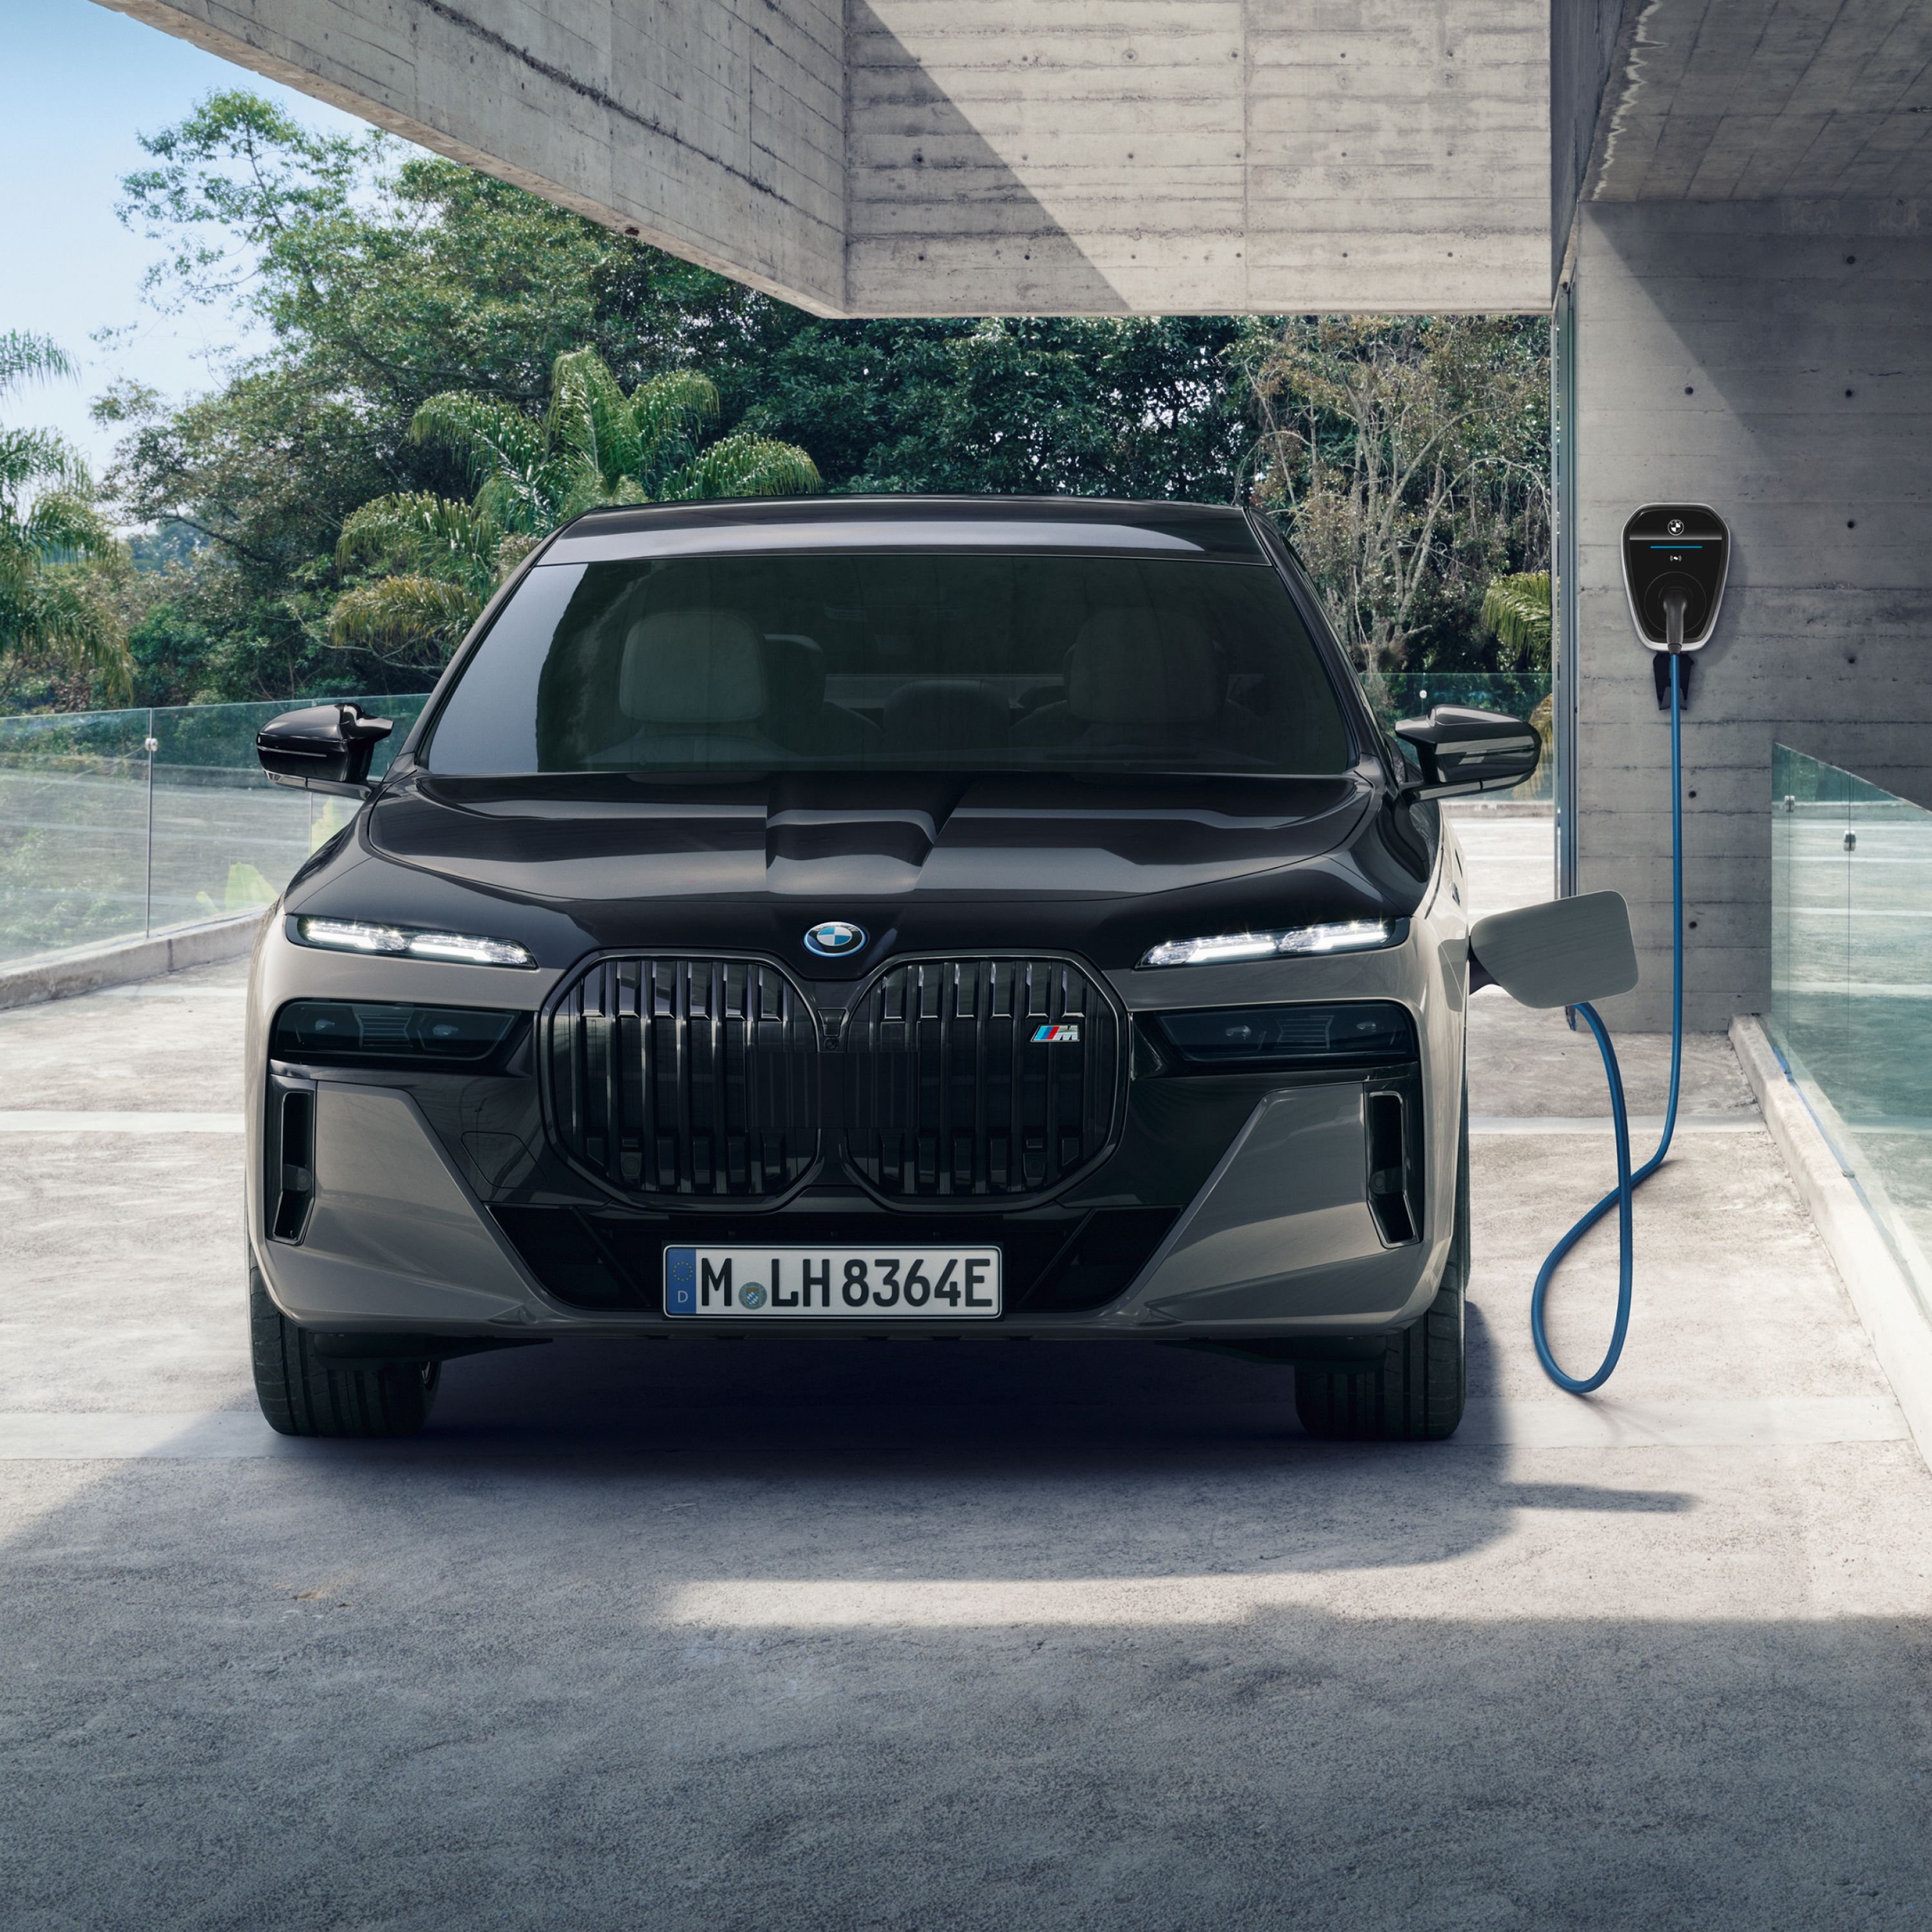 BMW Plug-in-Hybrid Public Charging